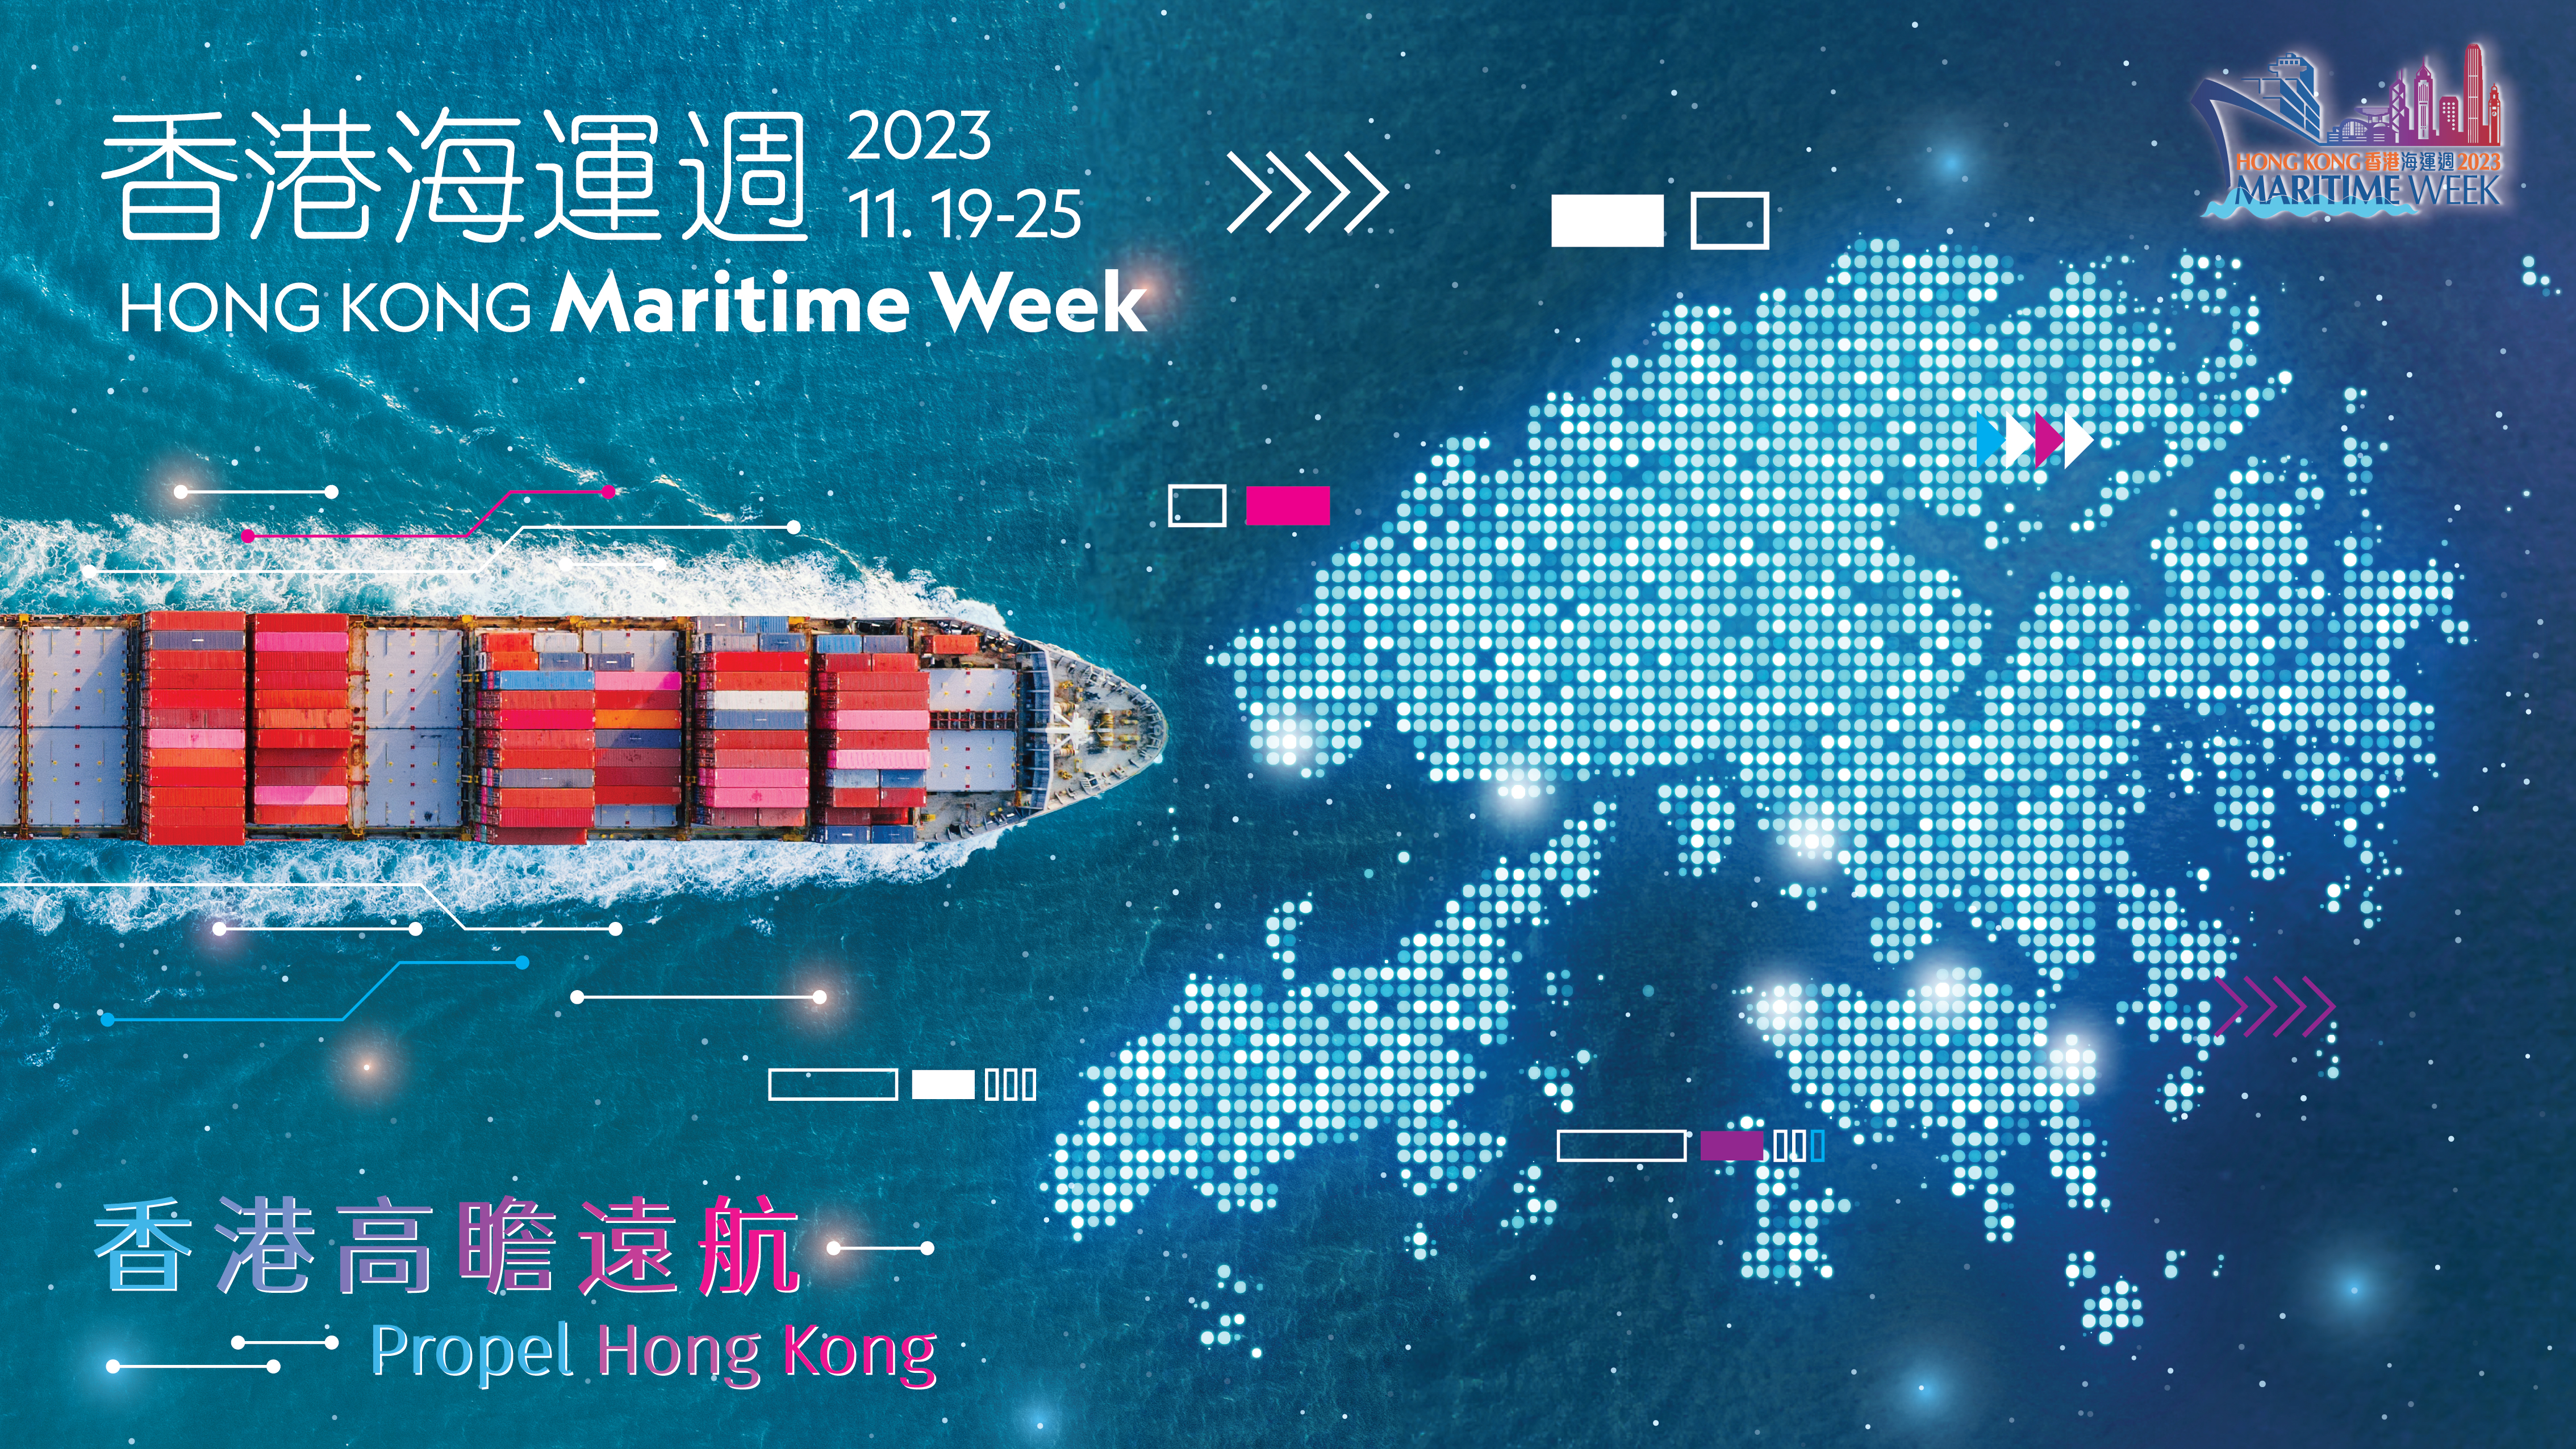 香港海运周2023 - 开幕典礼暨第三届世界航商大会 (只有英文)